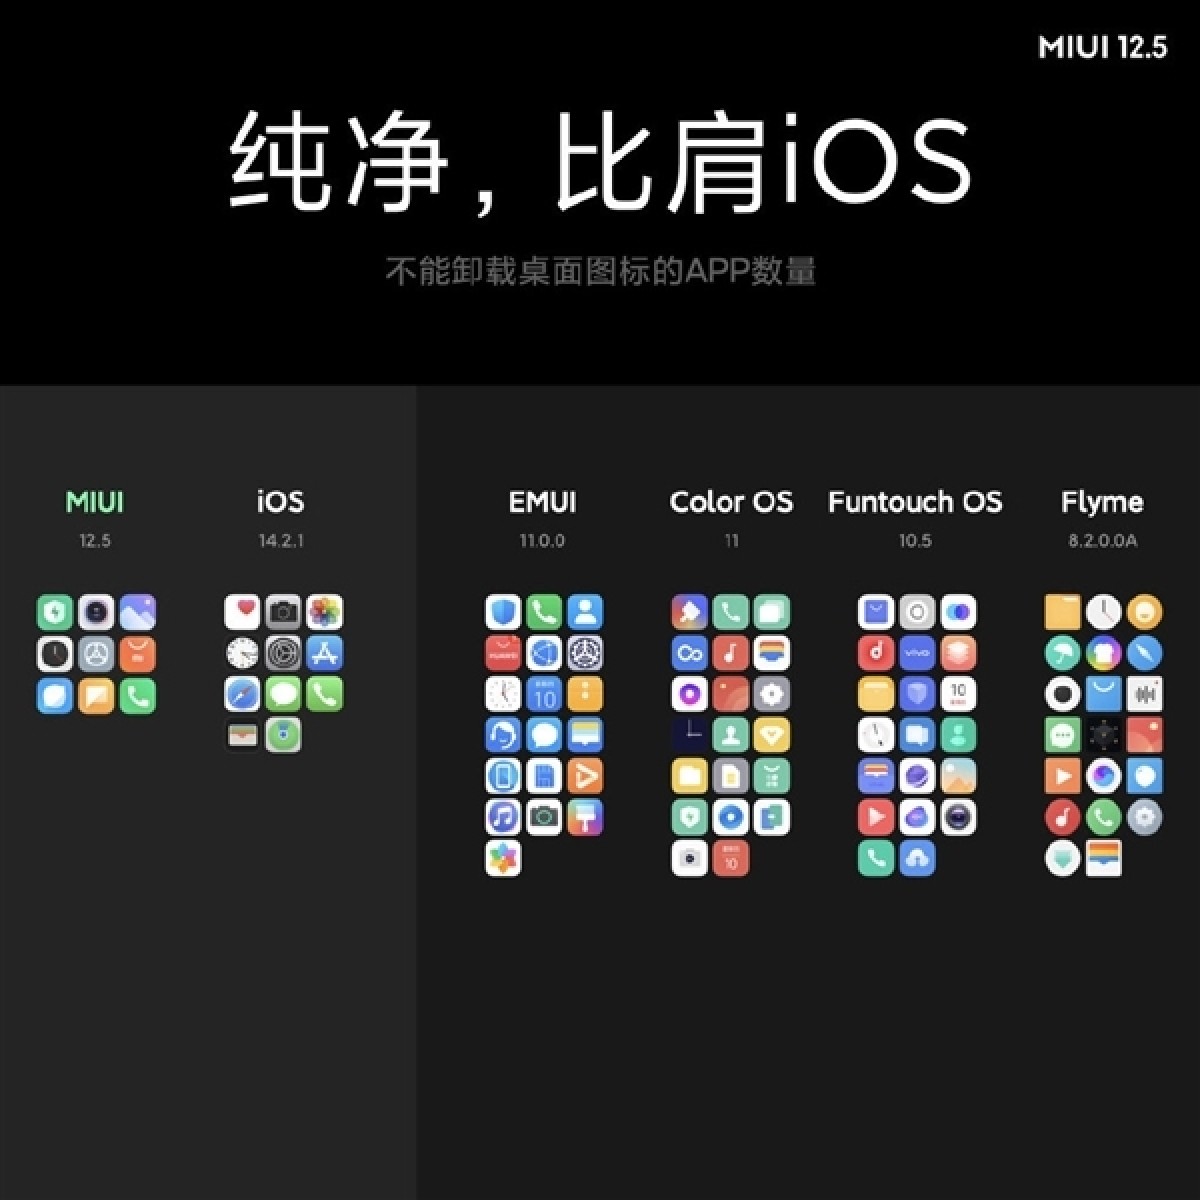 أعلنت شركة Xiaomi عن MIUI 12.5